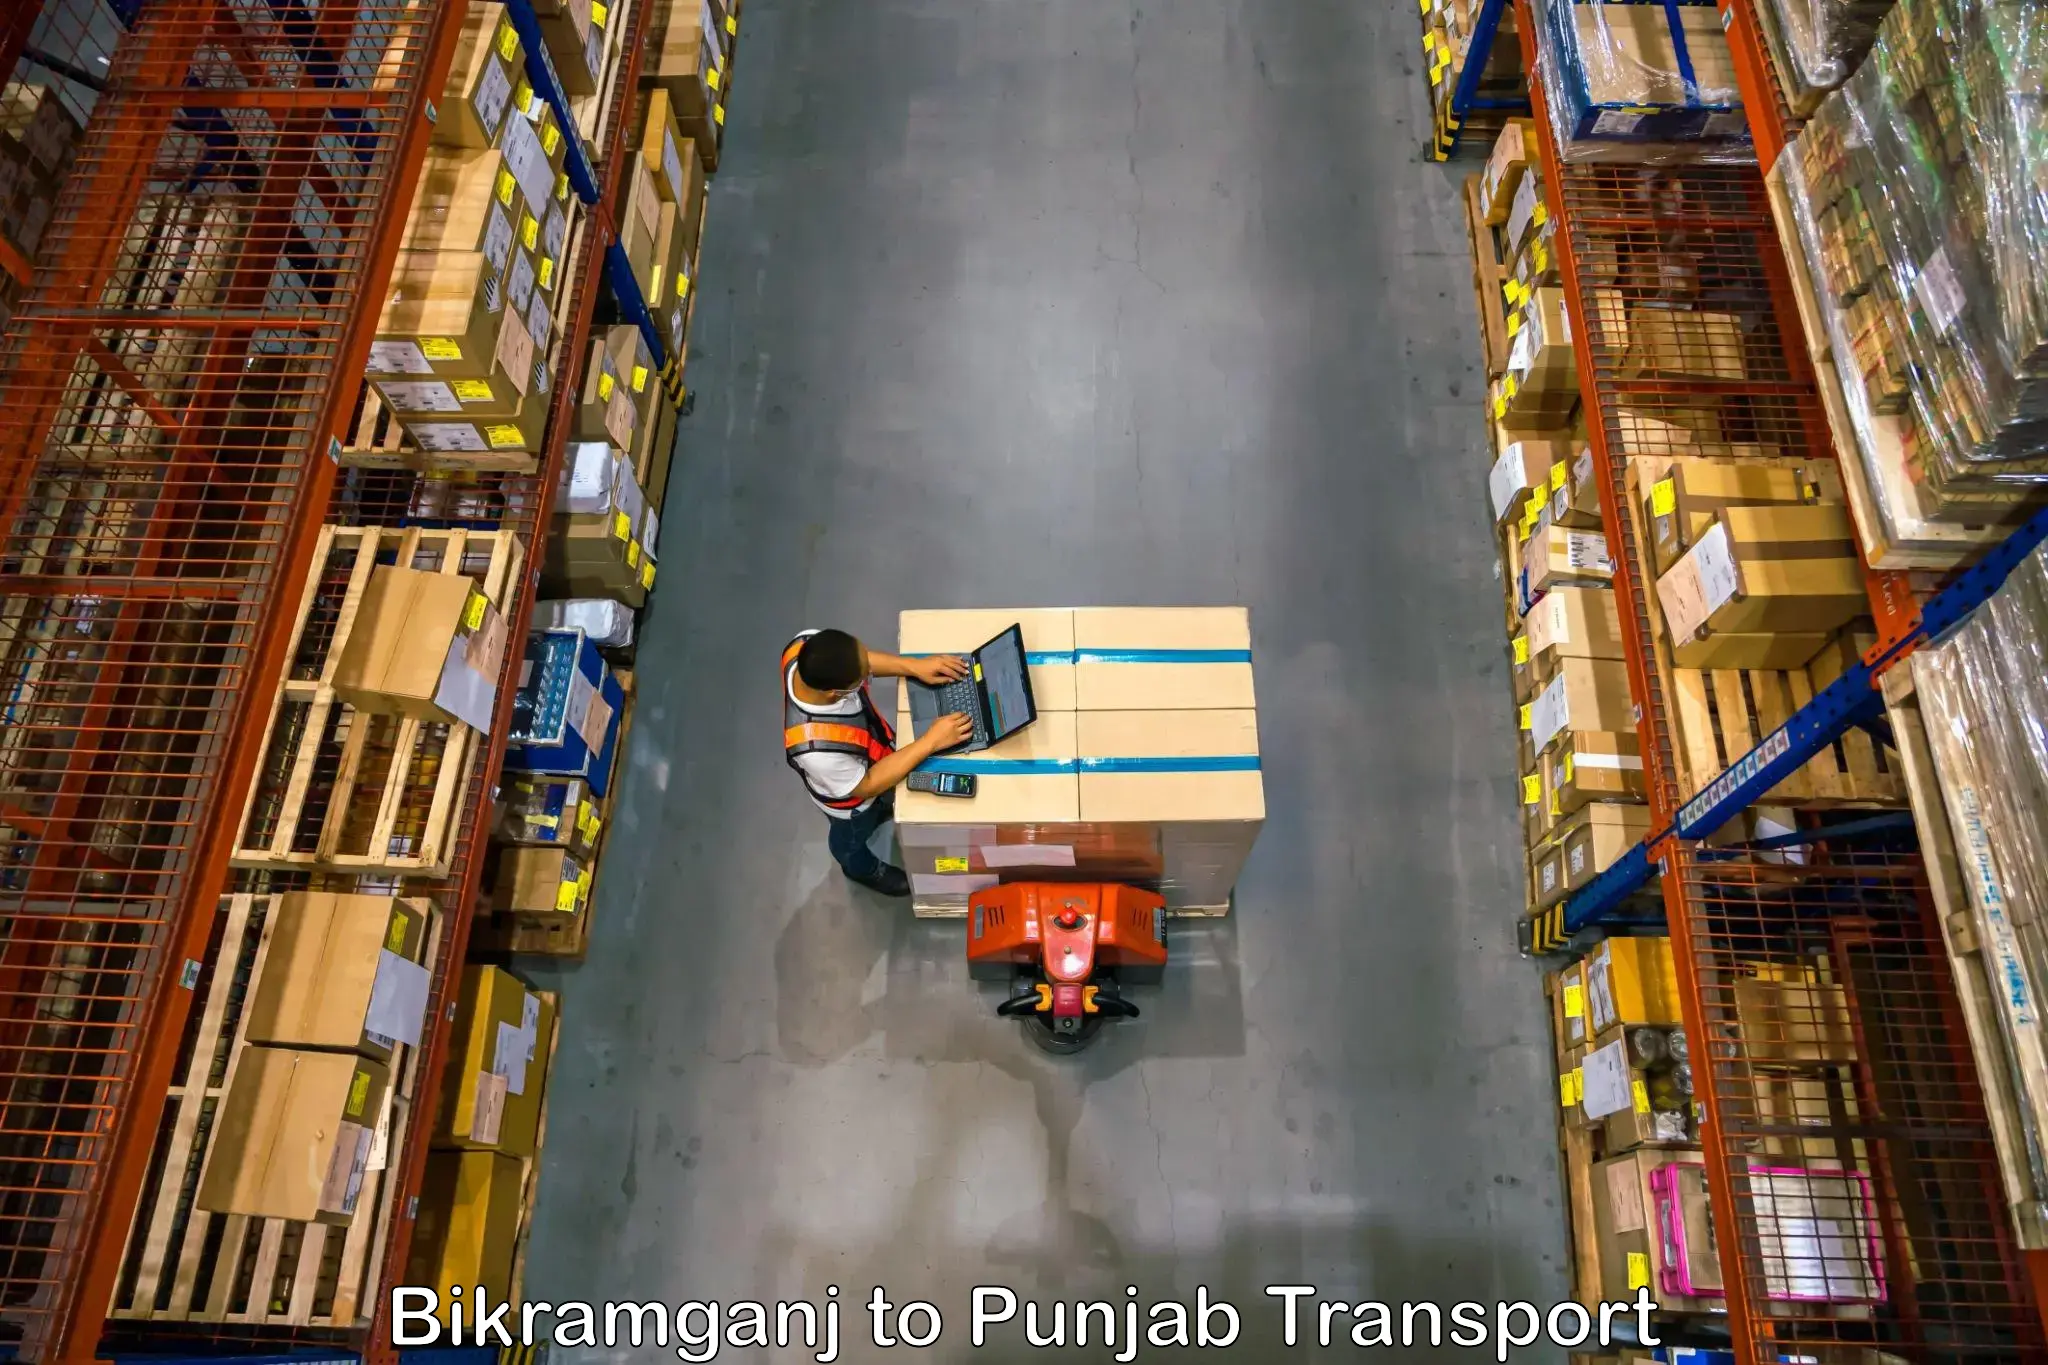 Part load transport service in India Bikramganj to Patti Tarn Tara